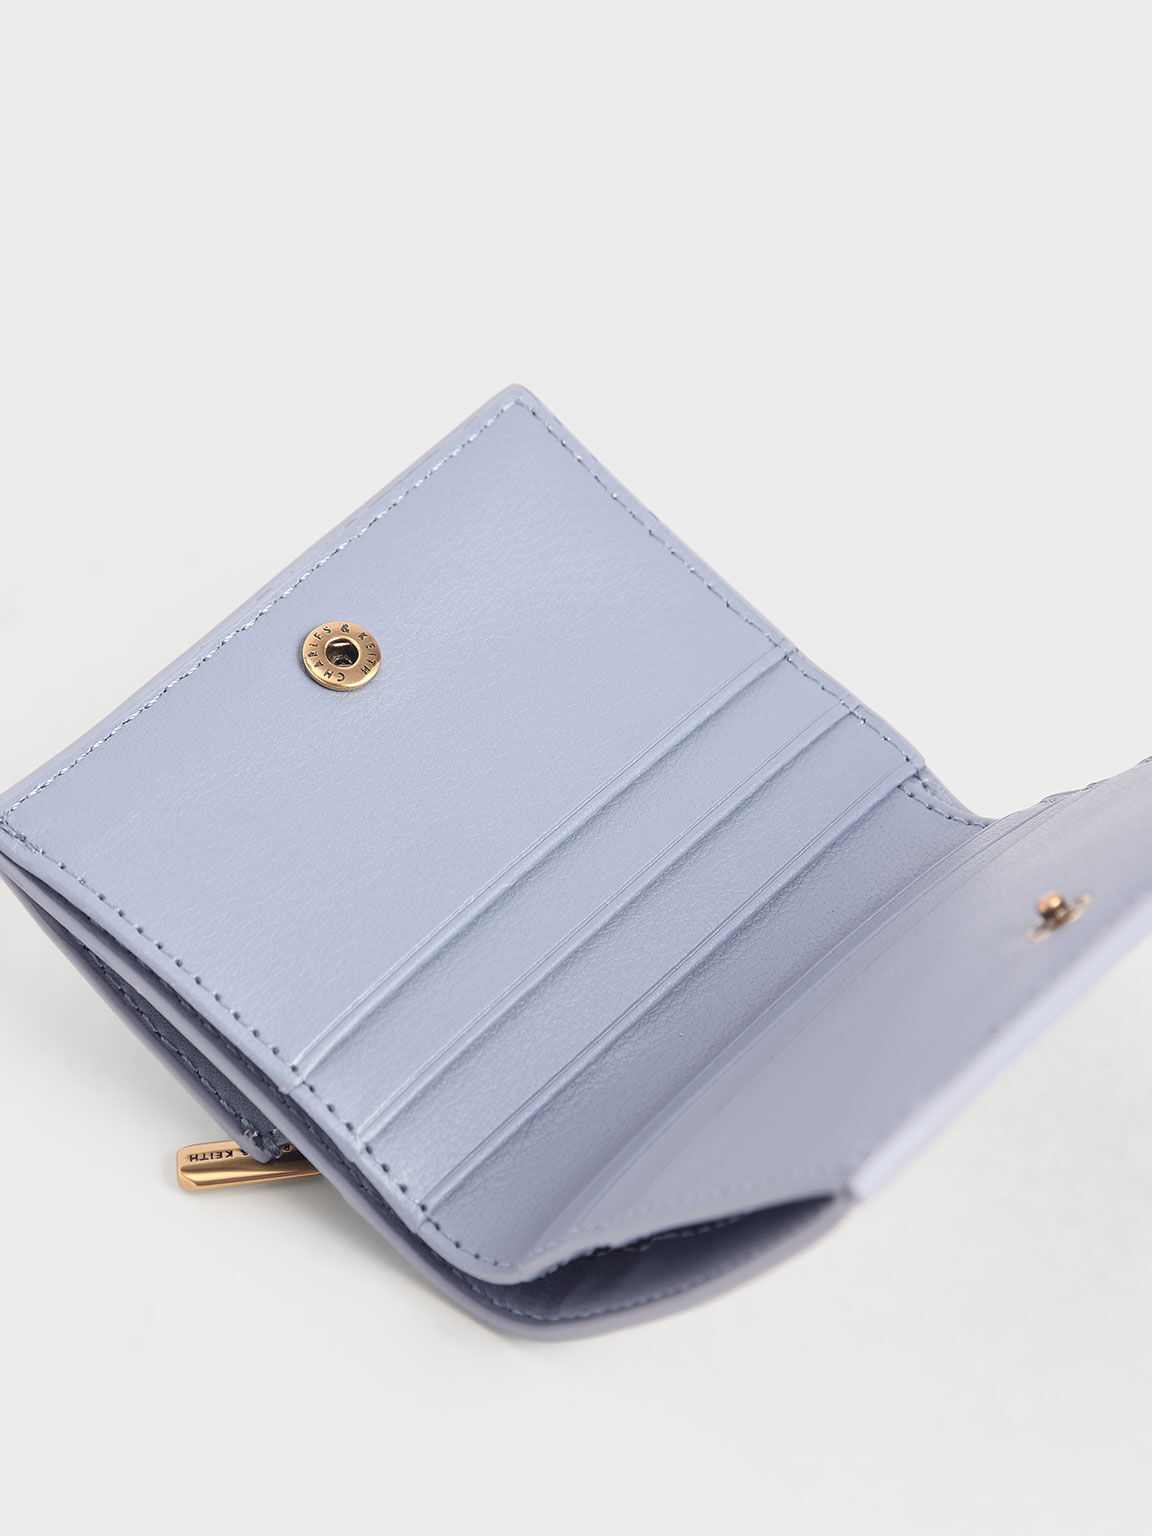 St Louis Blues Wallet Tassen & portemonnees Bagage & Reizen Reisportefeuilles Light Blue Denim Wrist Wallet for Blues Games and Events 